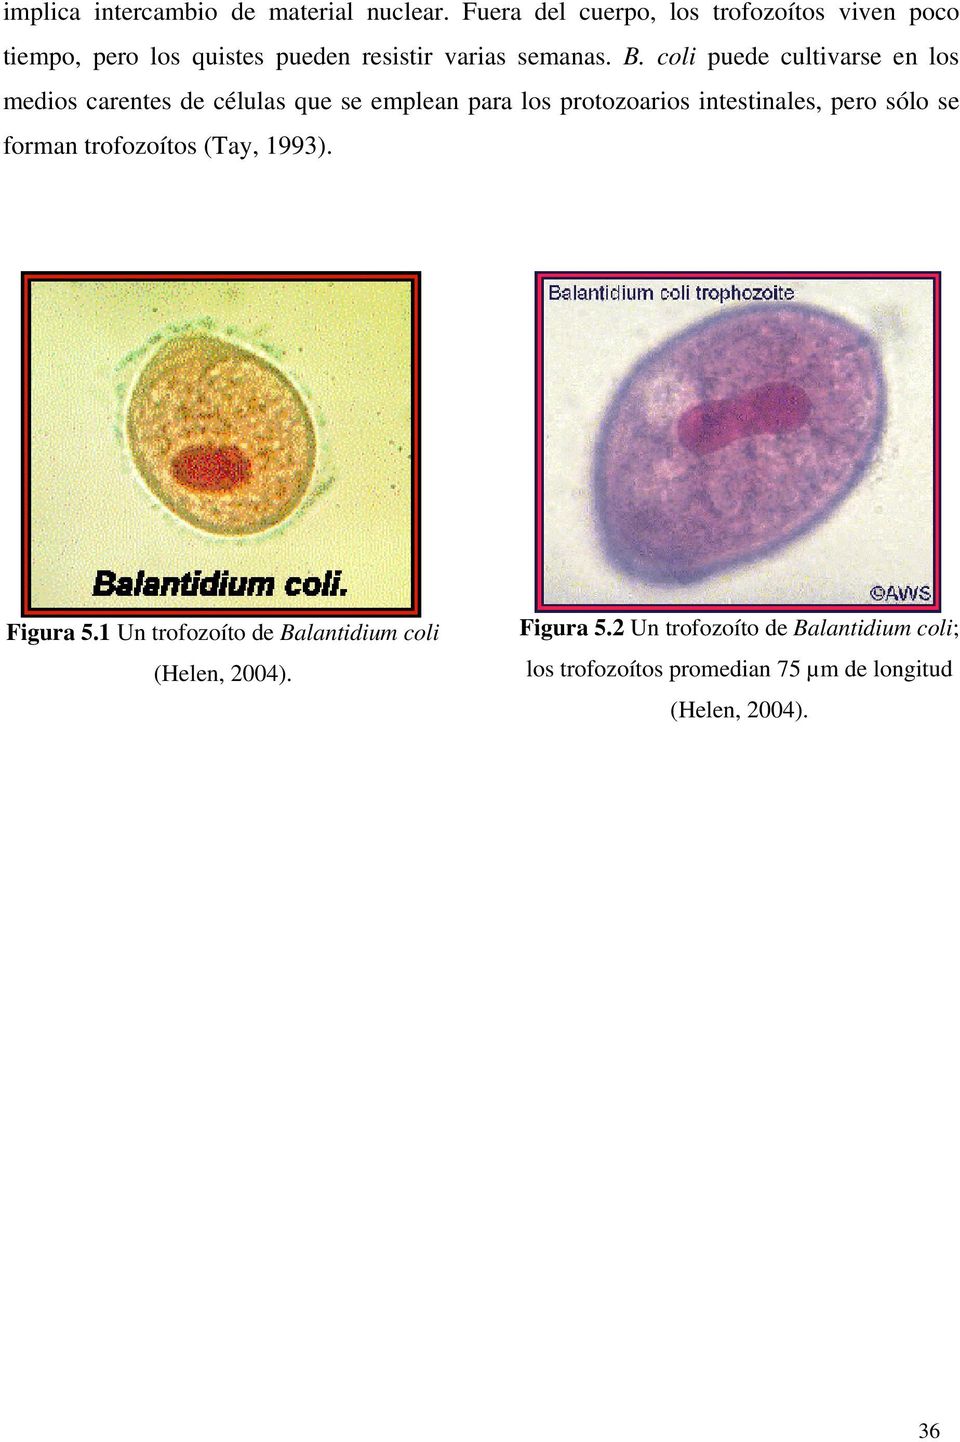 coli puede cultivarse en los medios carentes de células que se emplean para los protozoarios intestinales, pero sólo